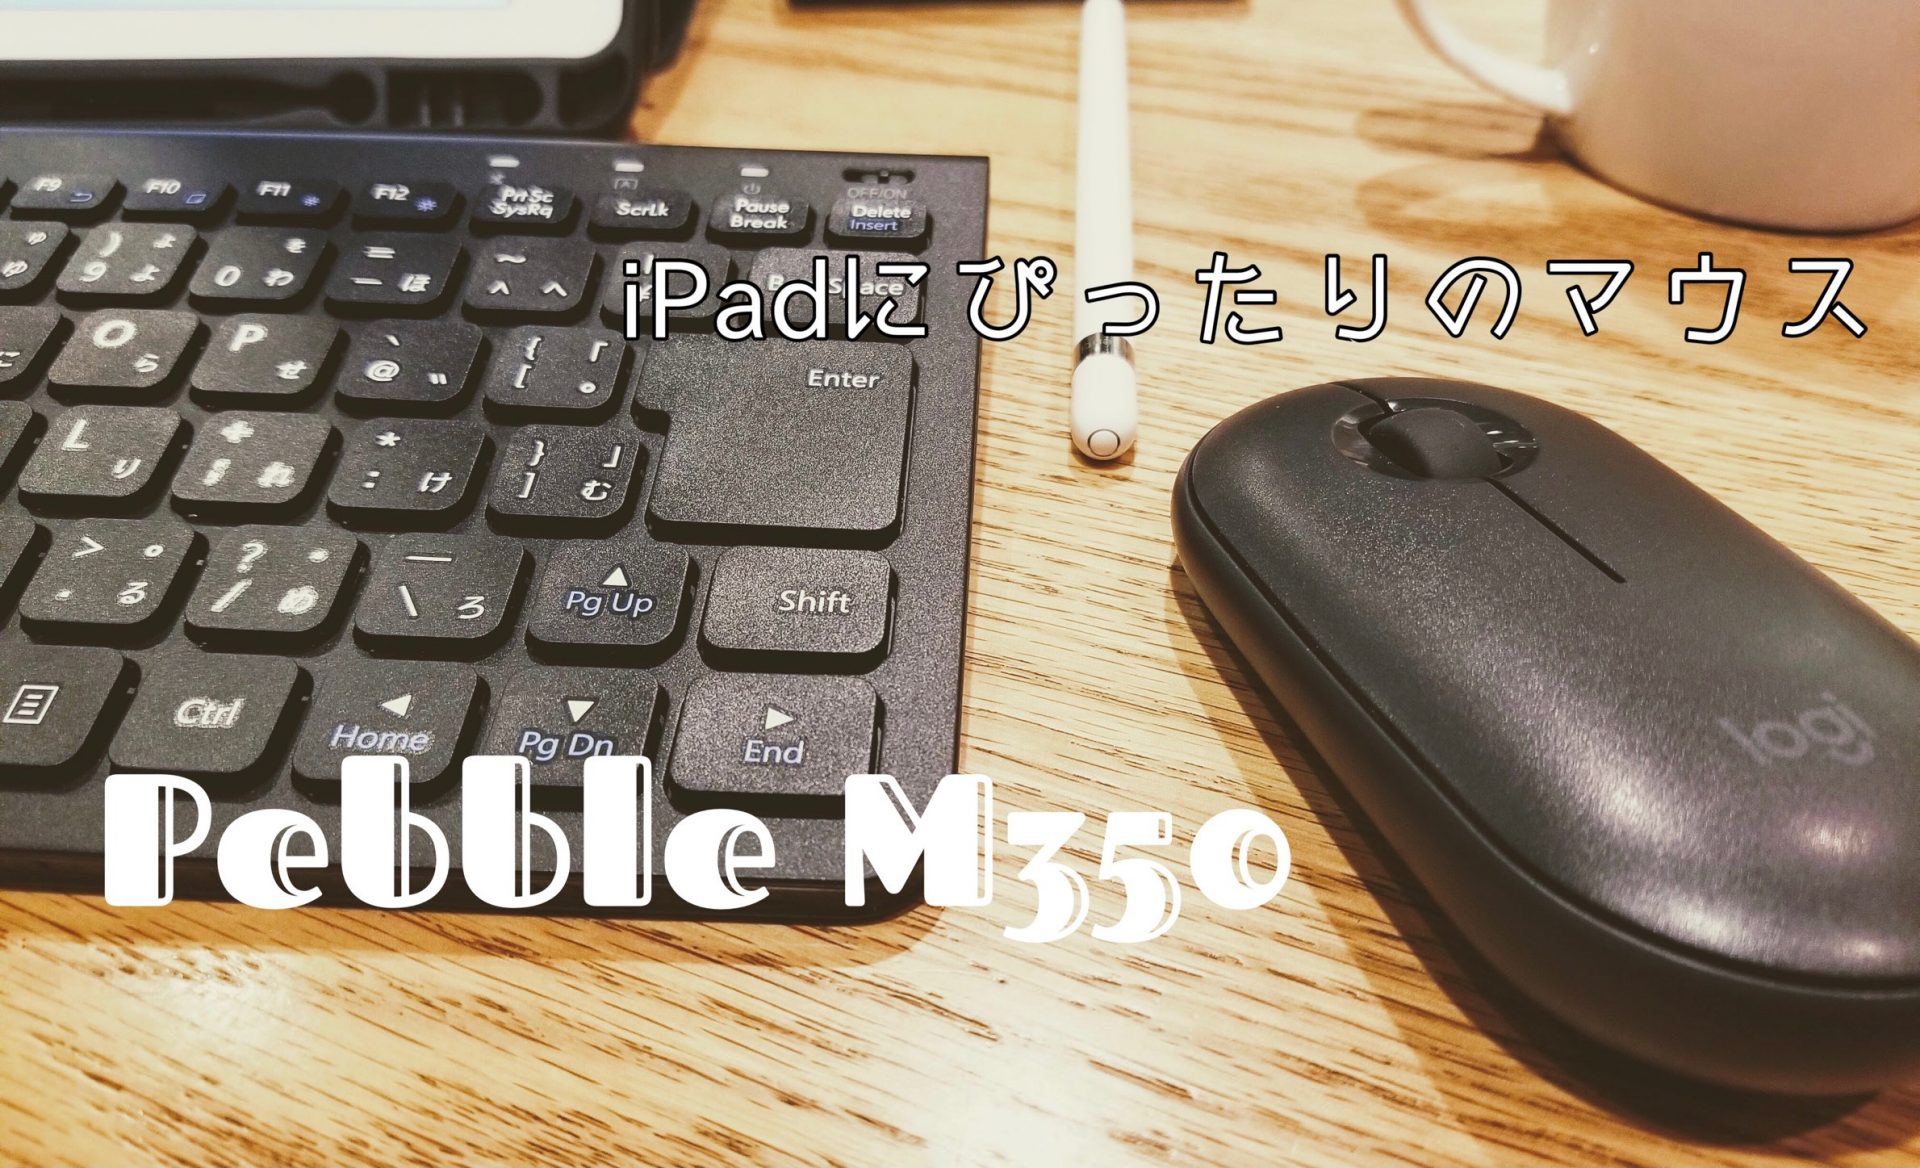 PebbleM350アイキャッチ画像